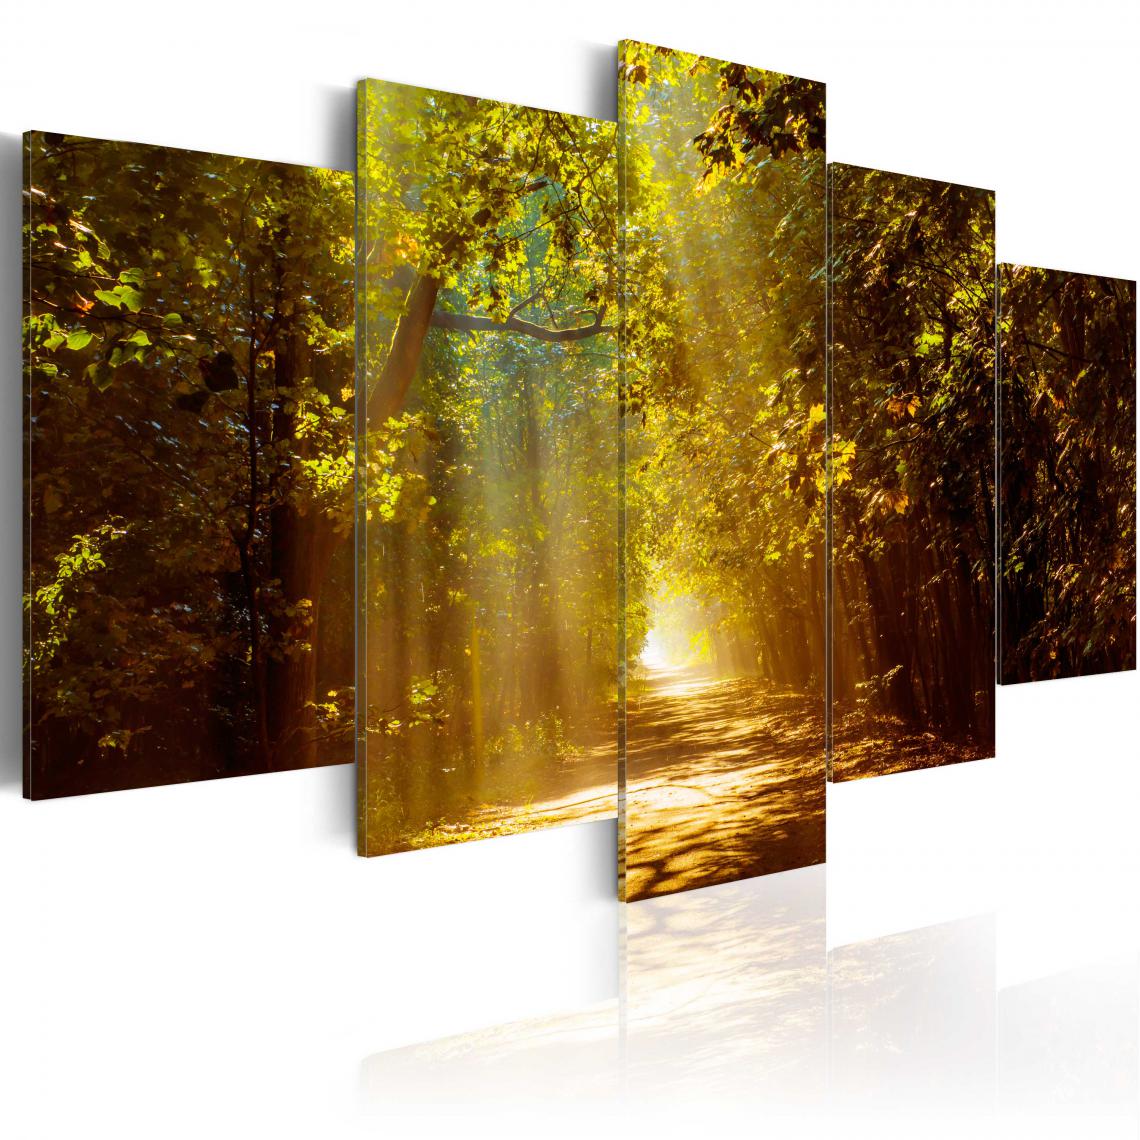 Decoshop26 - Tableau sur toile en 5 panneaux décoration murale image imprimée cadre en bois à suspendre Forêt ensoleillée 100x50 cm 11_0006223 - Tableaux, peintures